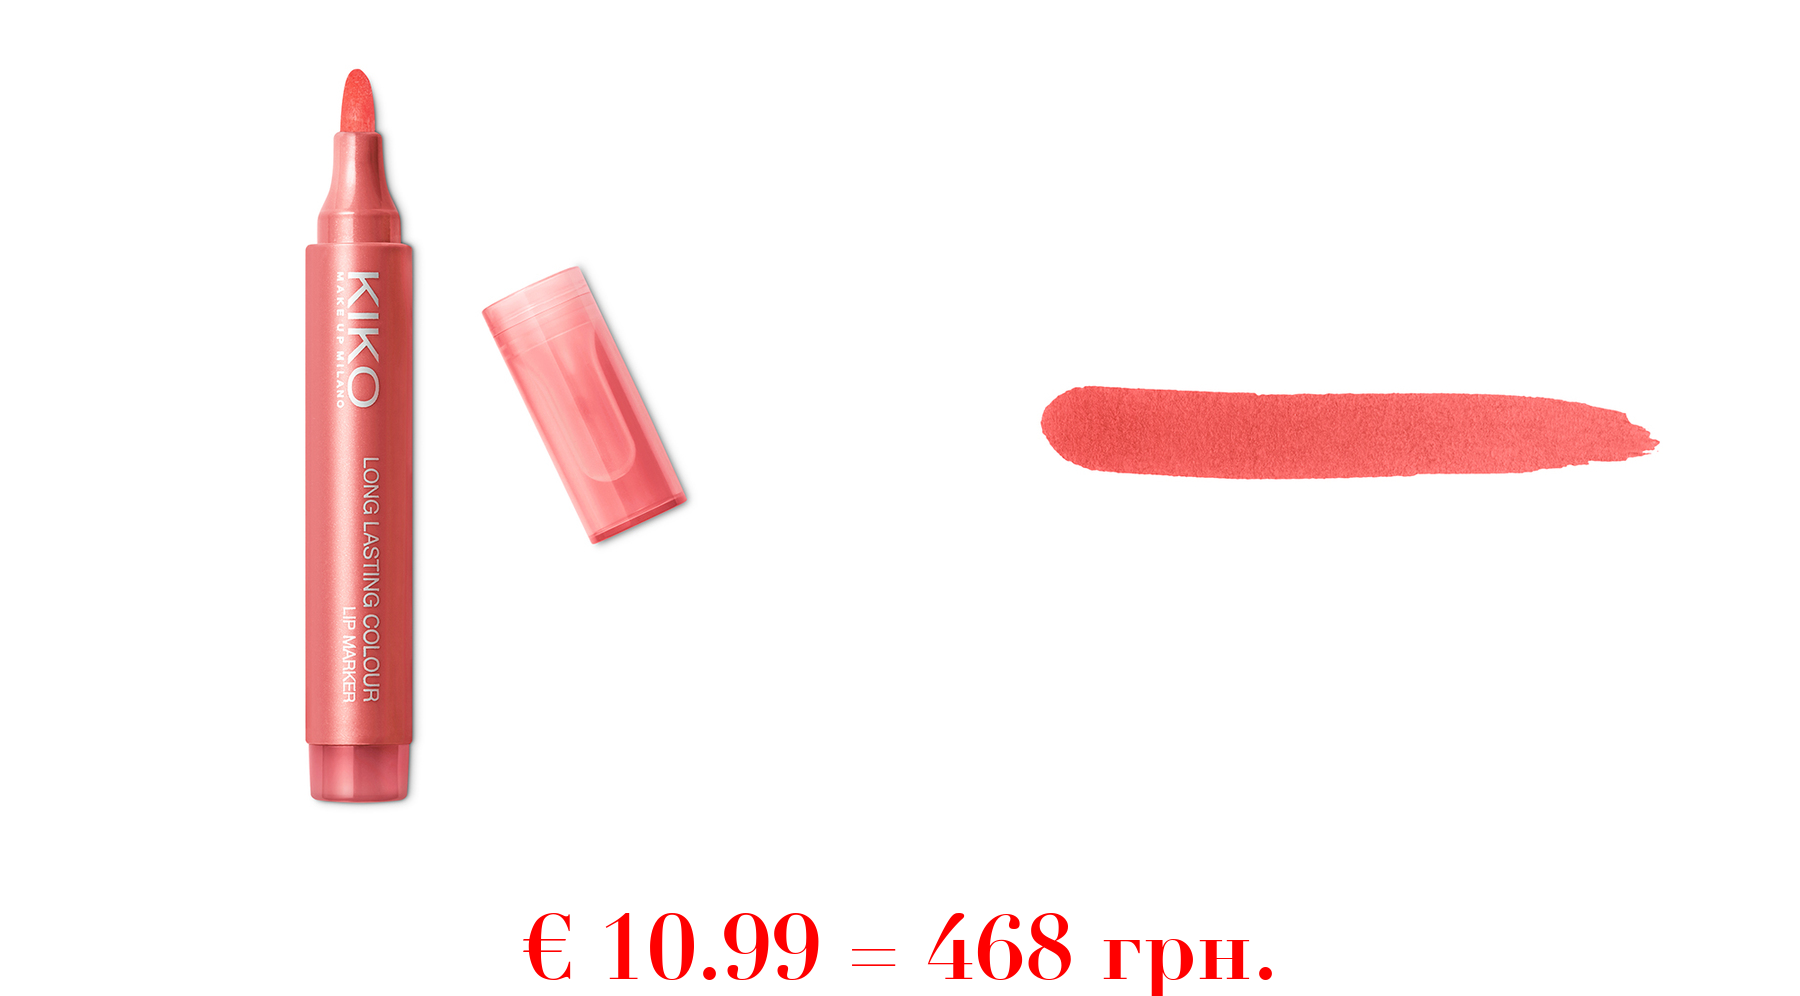 long lasting colour lip markerLippenstift no-transfer, natürlicher Tattoo-Effekt und extrem langer halt (10 stunden*)